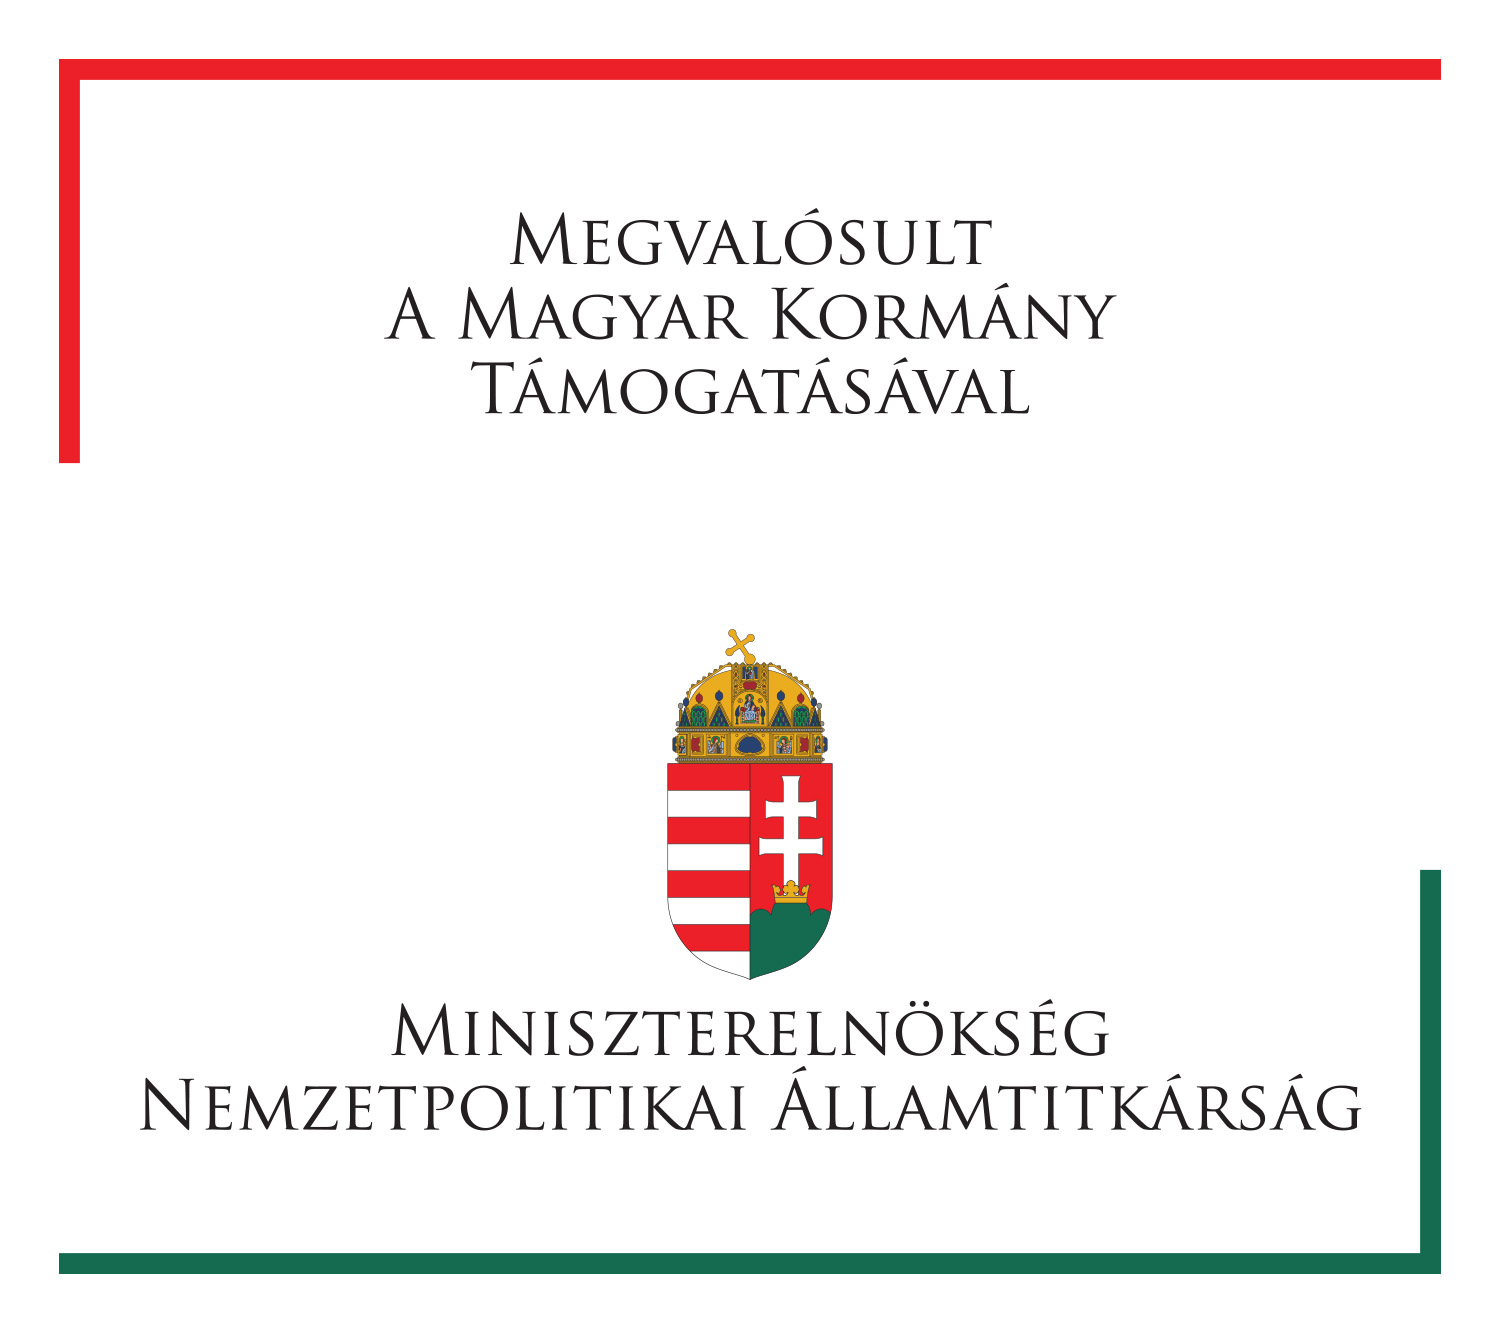 Megvalósult a Magyar Kormány támogatásával – Miniszterelnökség Nemzetpolitikai Államtitkárság – logo